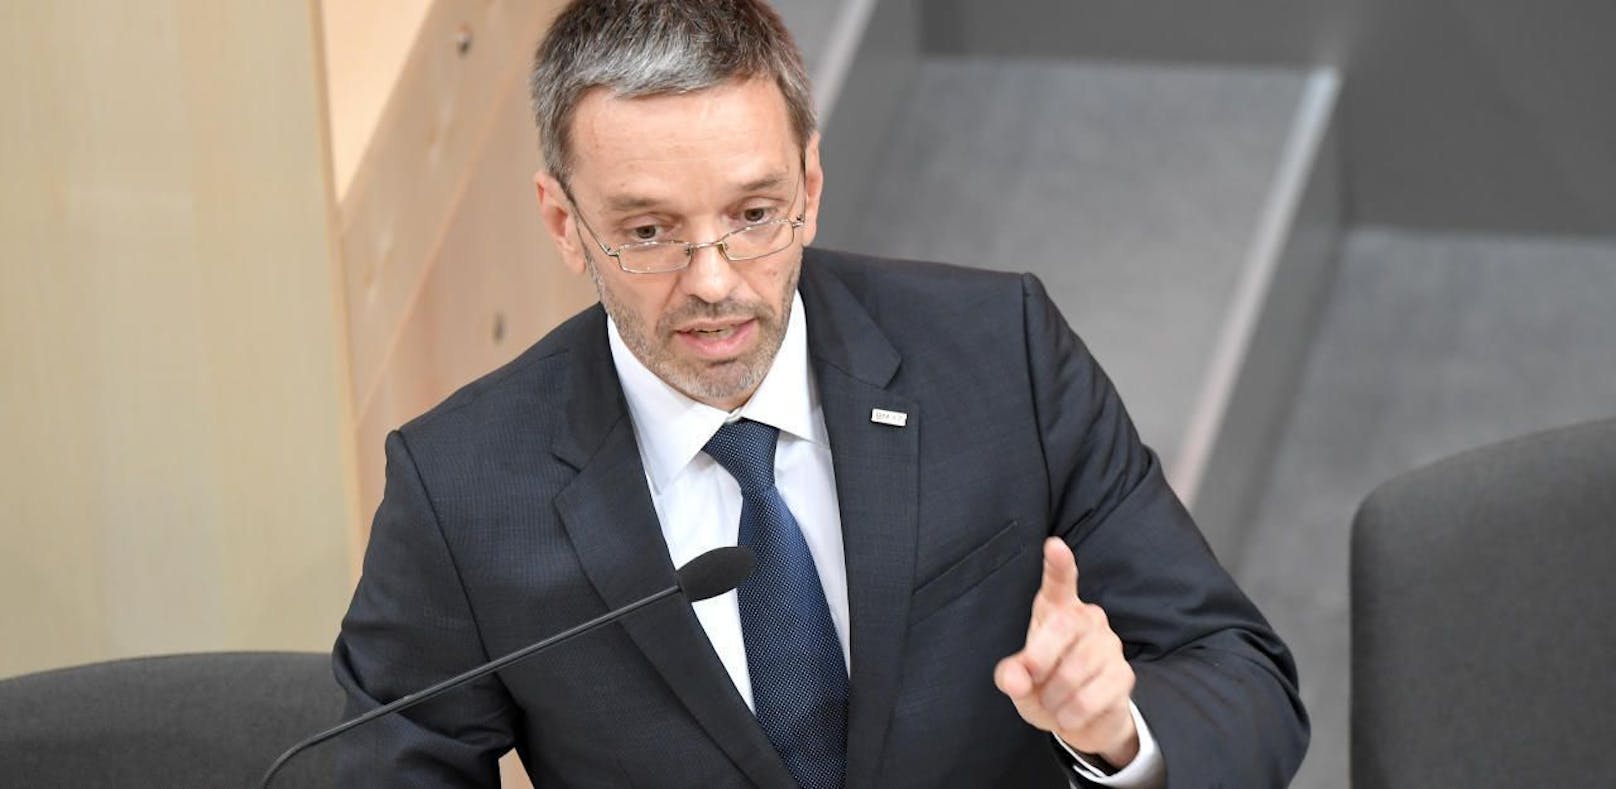 Innenminister Herbert Kickl (FPÖ) im Rahmen der Sondersitzung des Nationalrates zur BVT-Affäre.